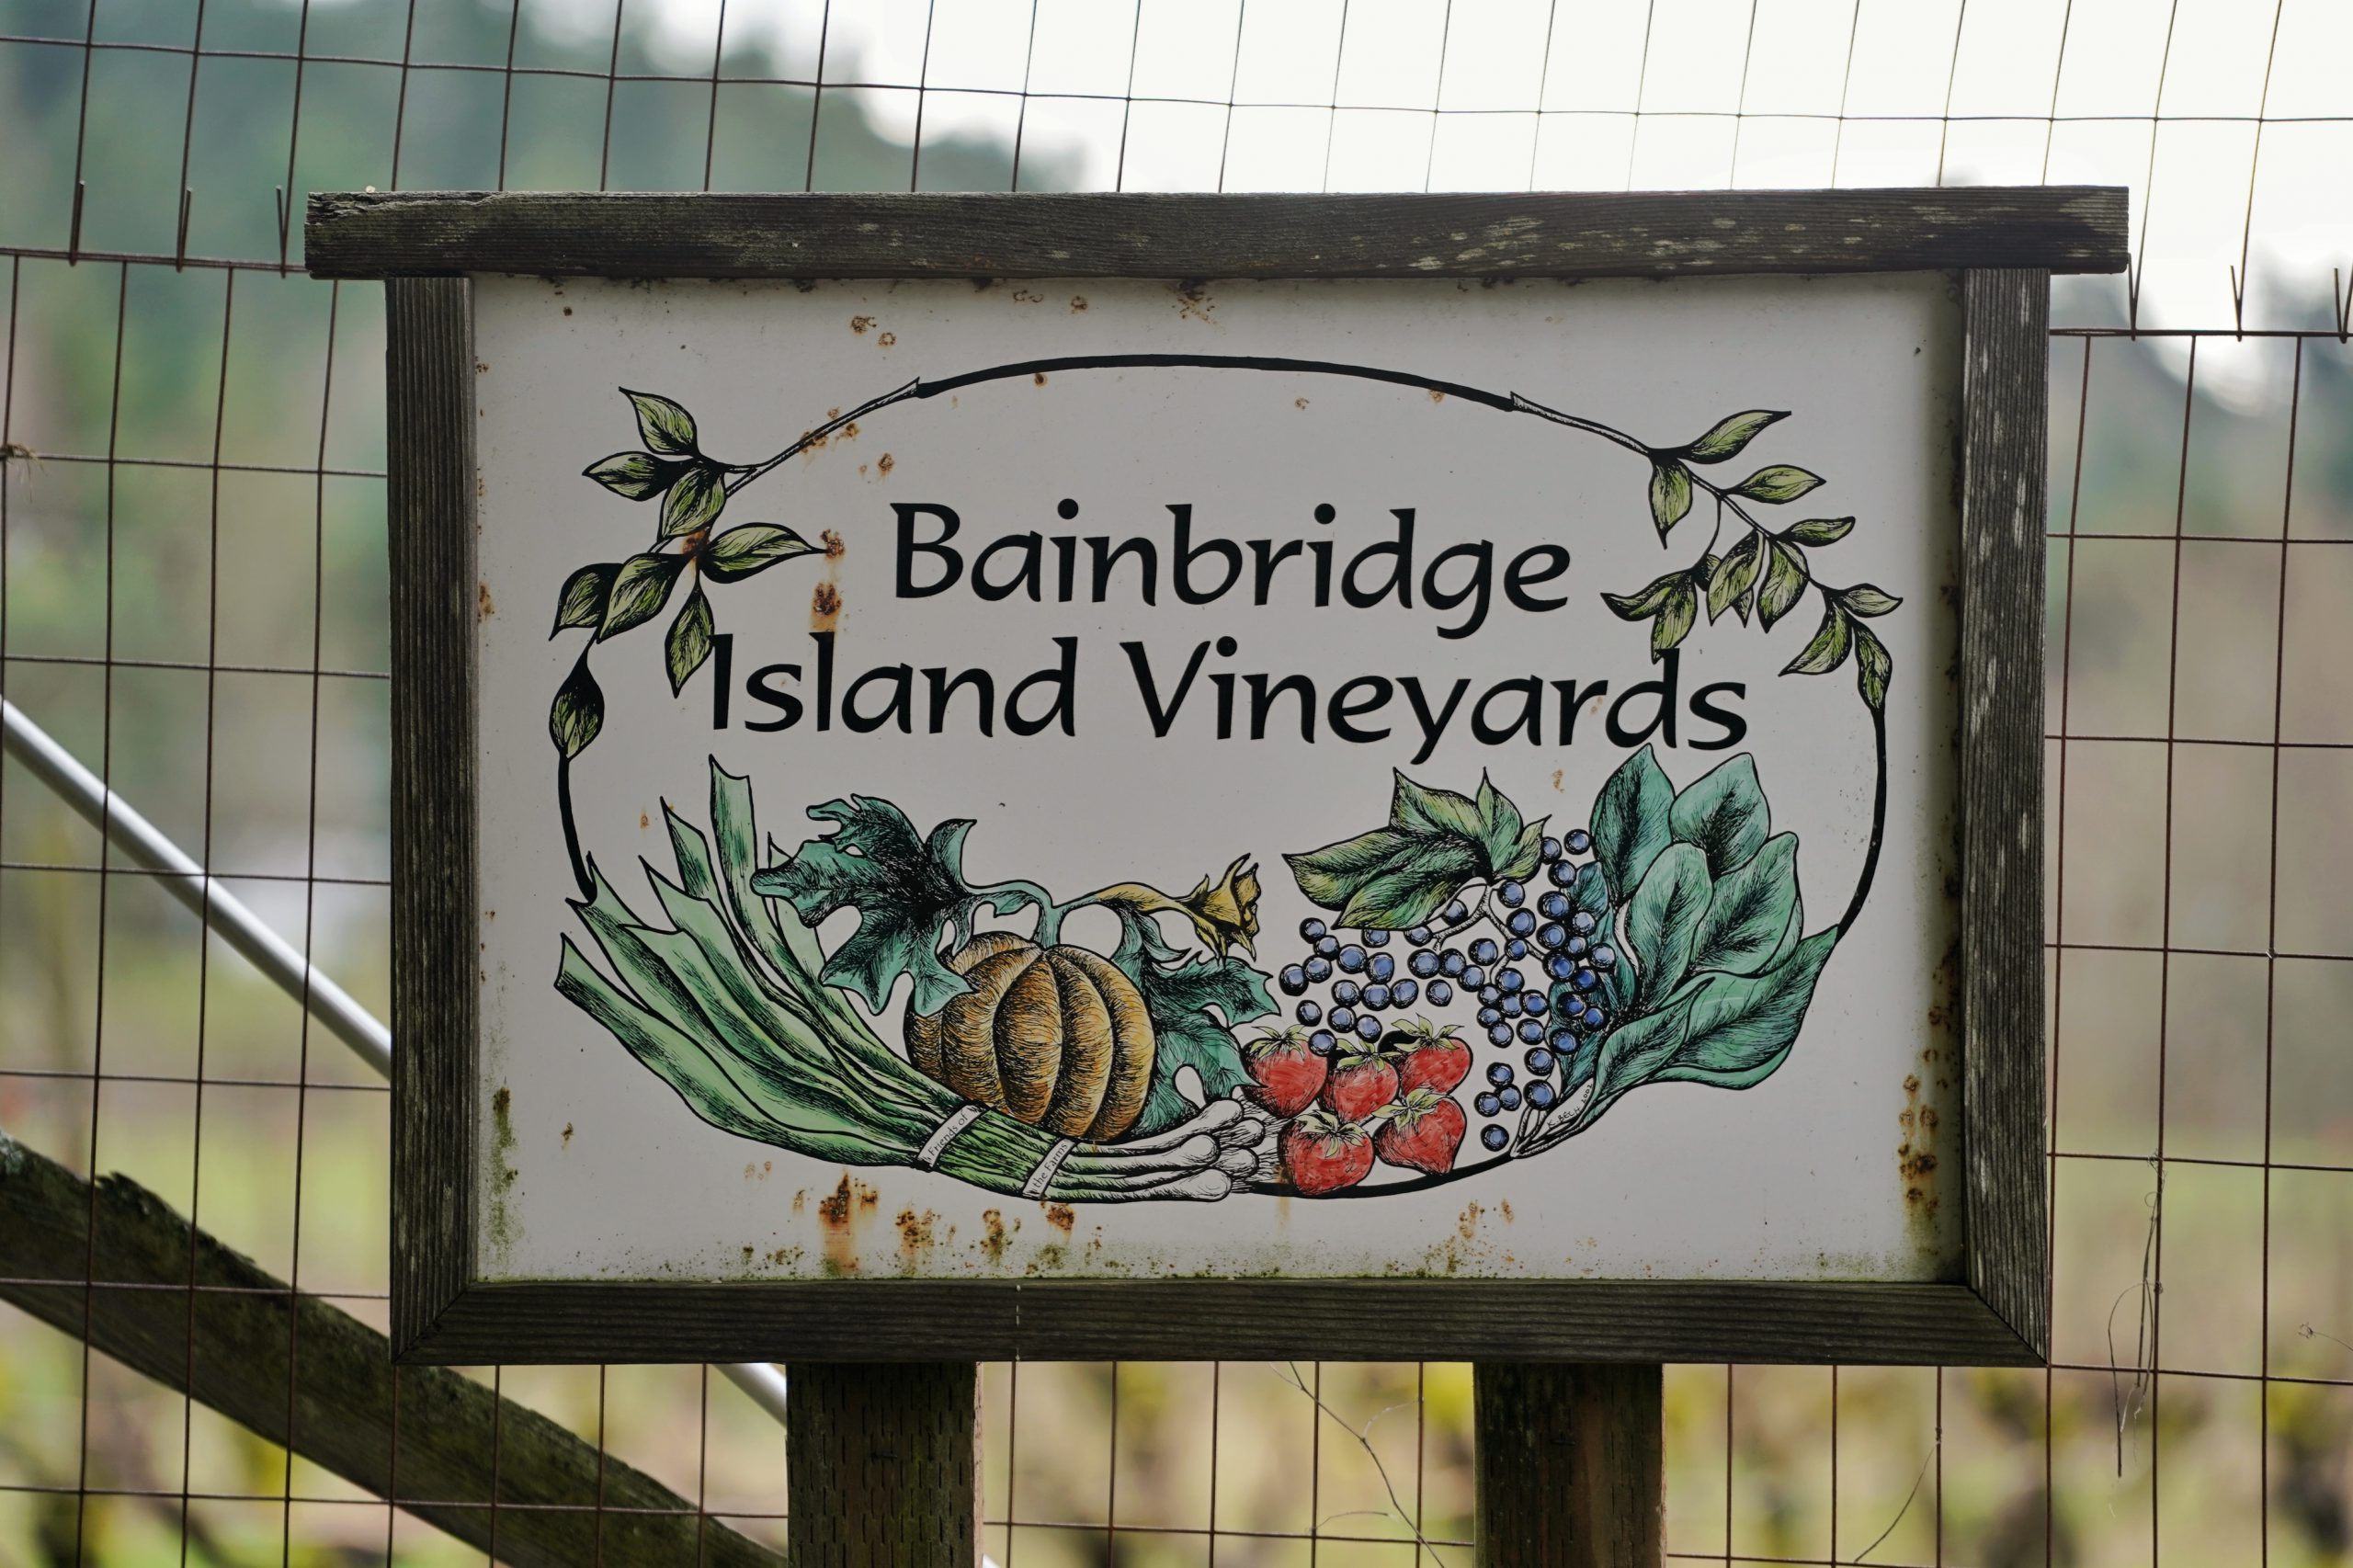 Bainbridge Vineyards seit 2013 unter neuer Führung